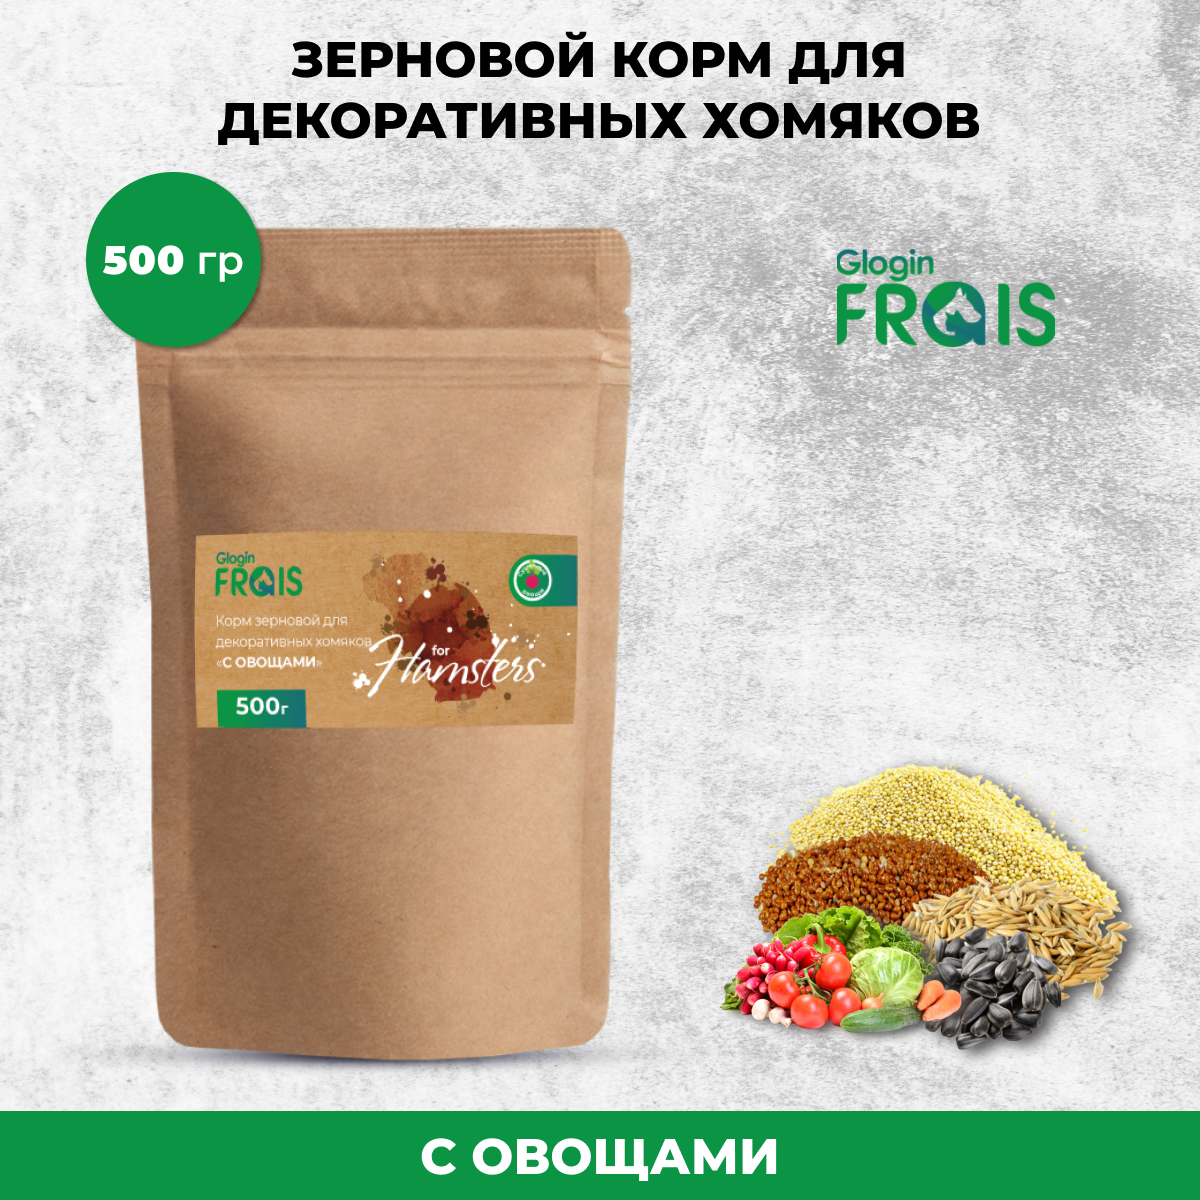 Сухой корм для декоративных хомяков Glogin FRAIS Стандарт, зерновой, с овощами, 500 г